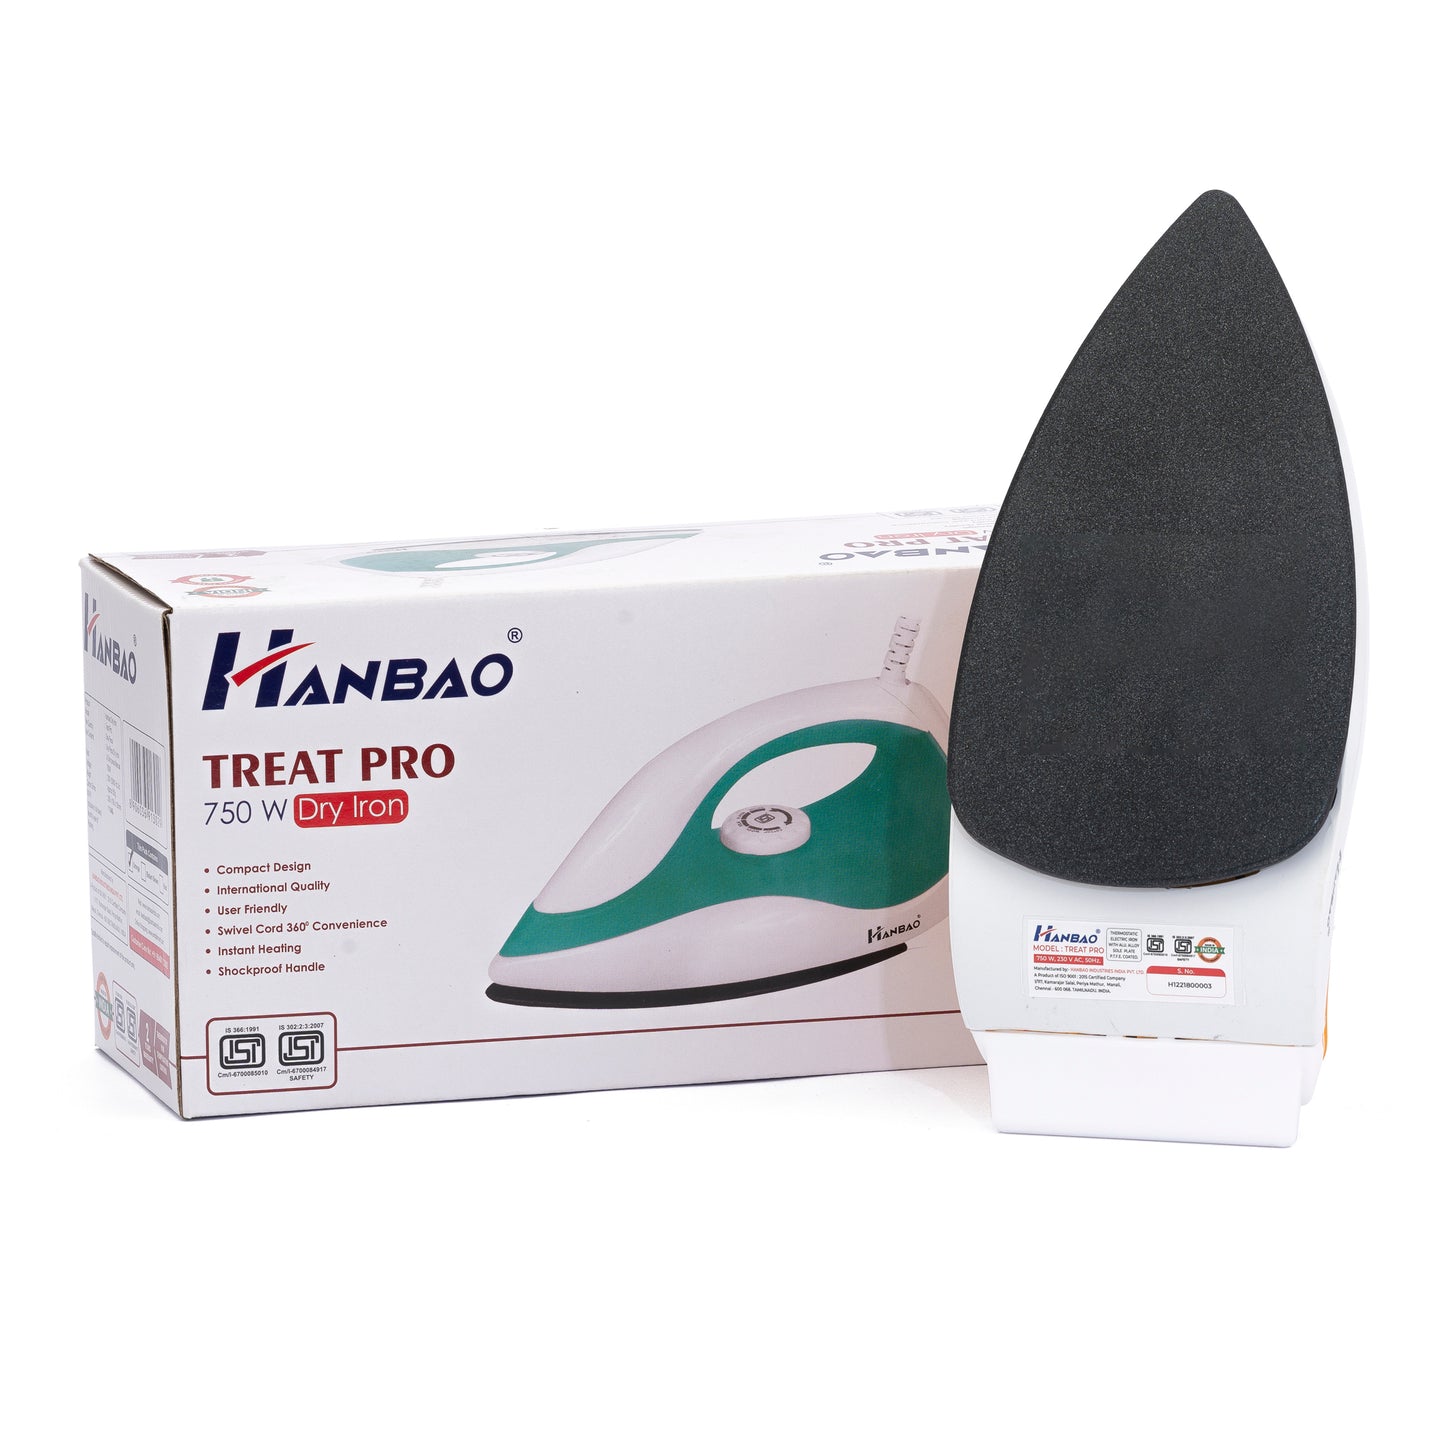 HANBAO 750W Electric Dry Iron, TREAT PRO, 2 Years Warranty*